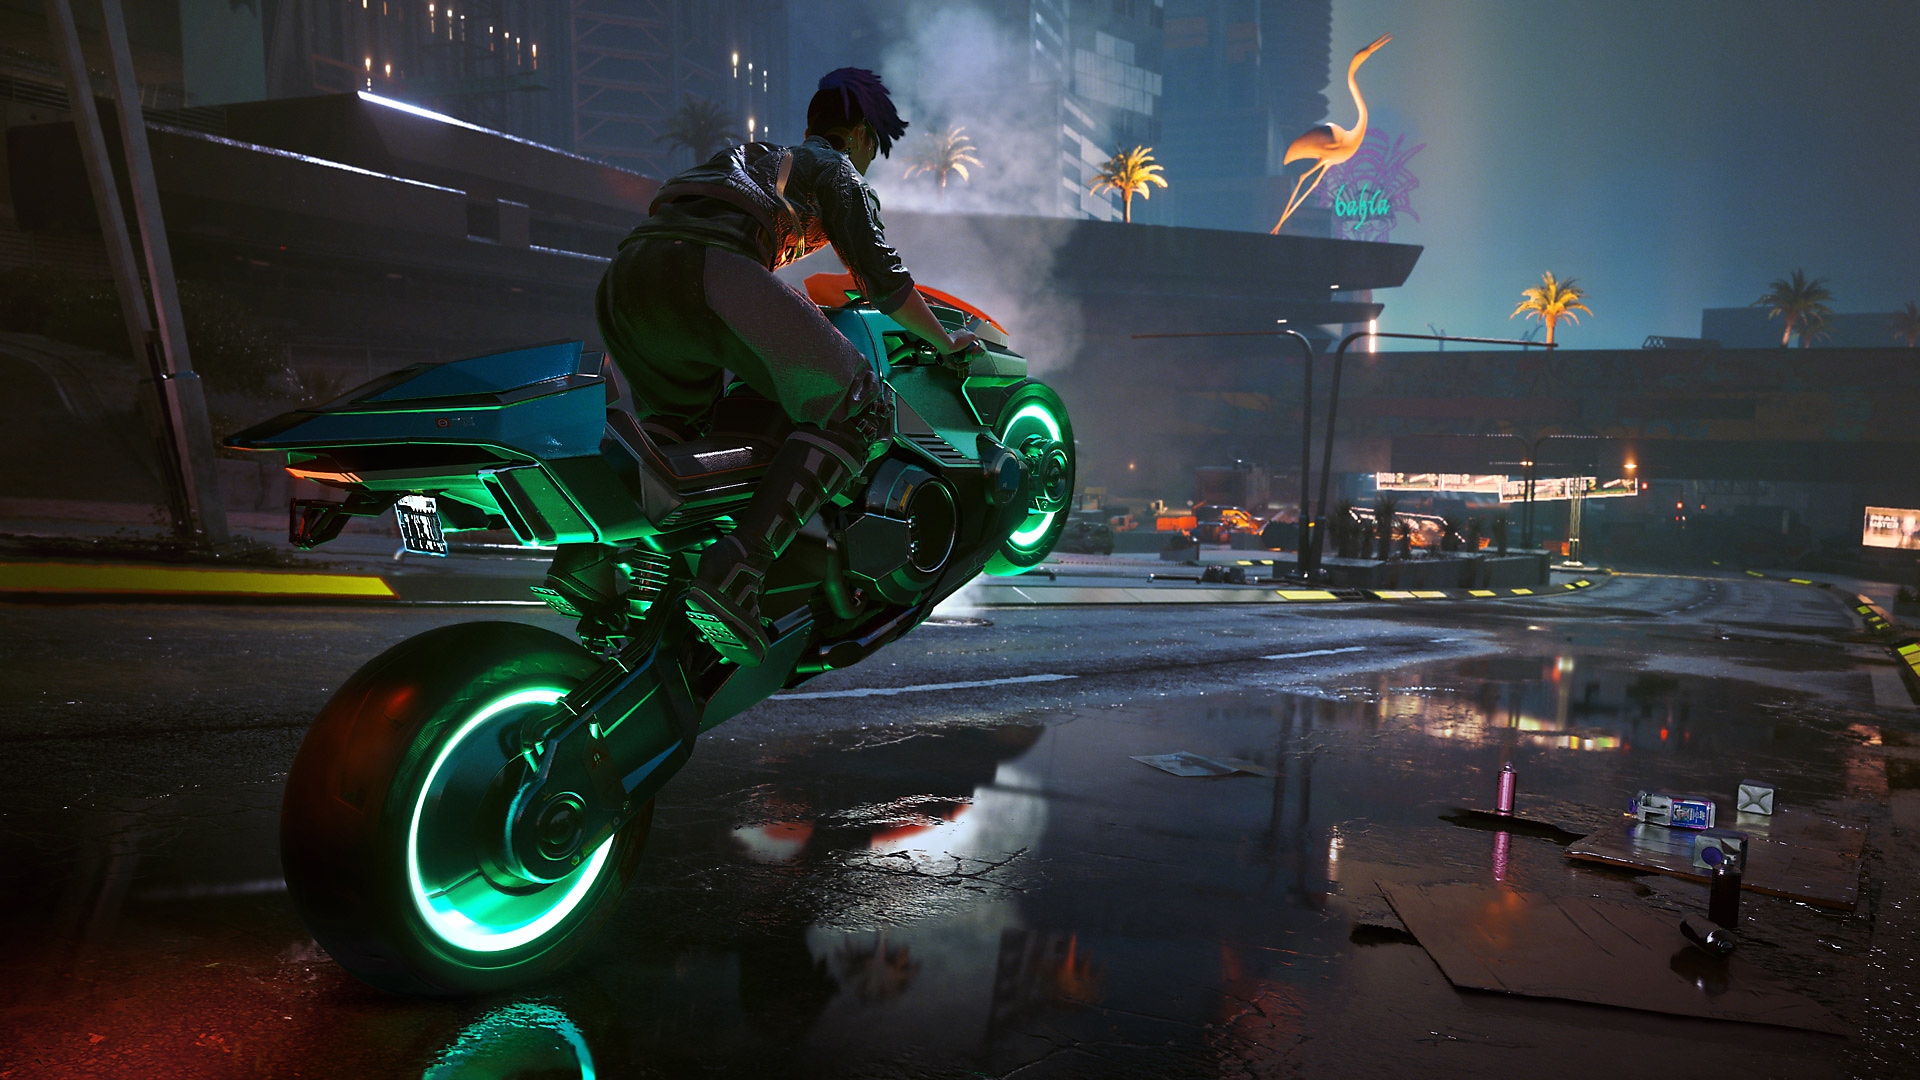 Actualización de Cyberpunk 2077: Edgerunners que muestra a un personaje haciendo un caballito en una motocicleta con ruedas verdes brillantes